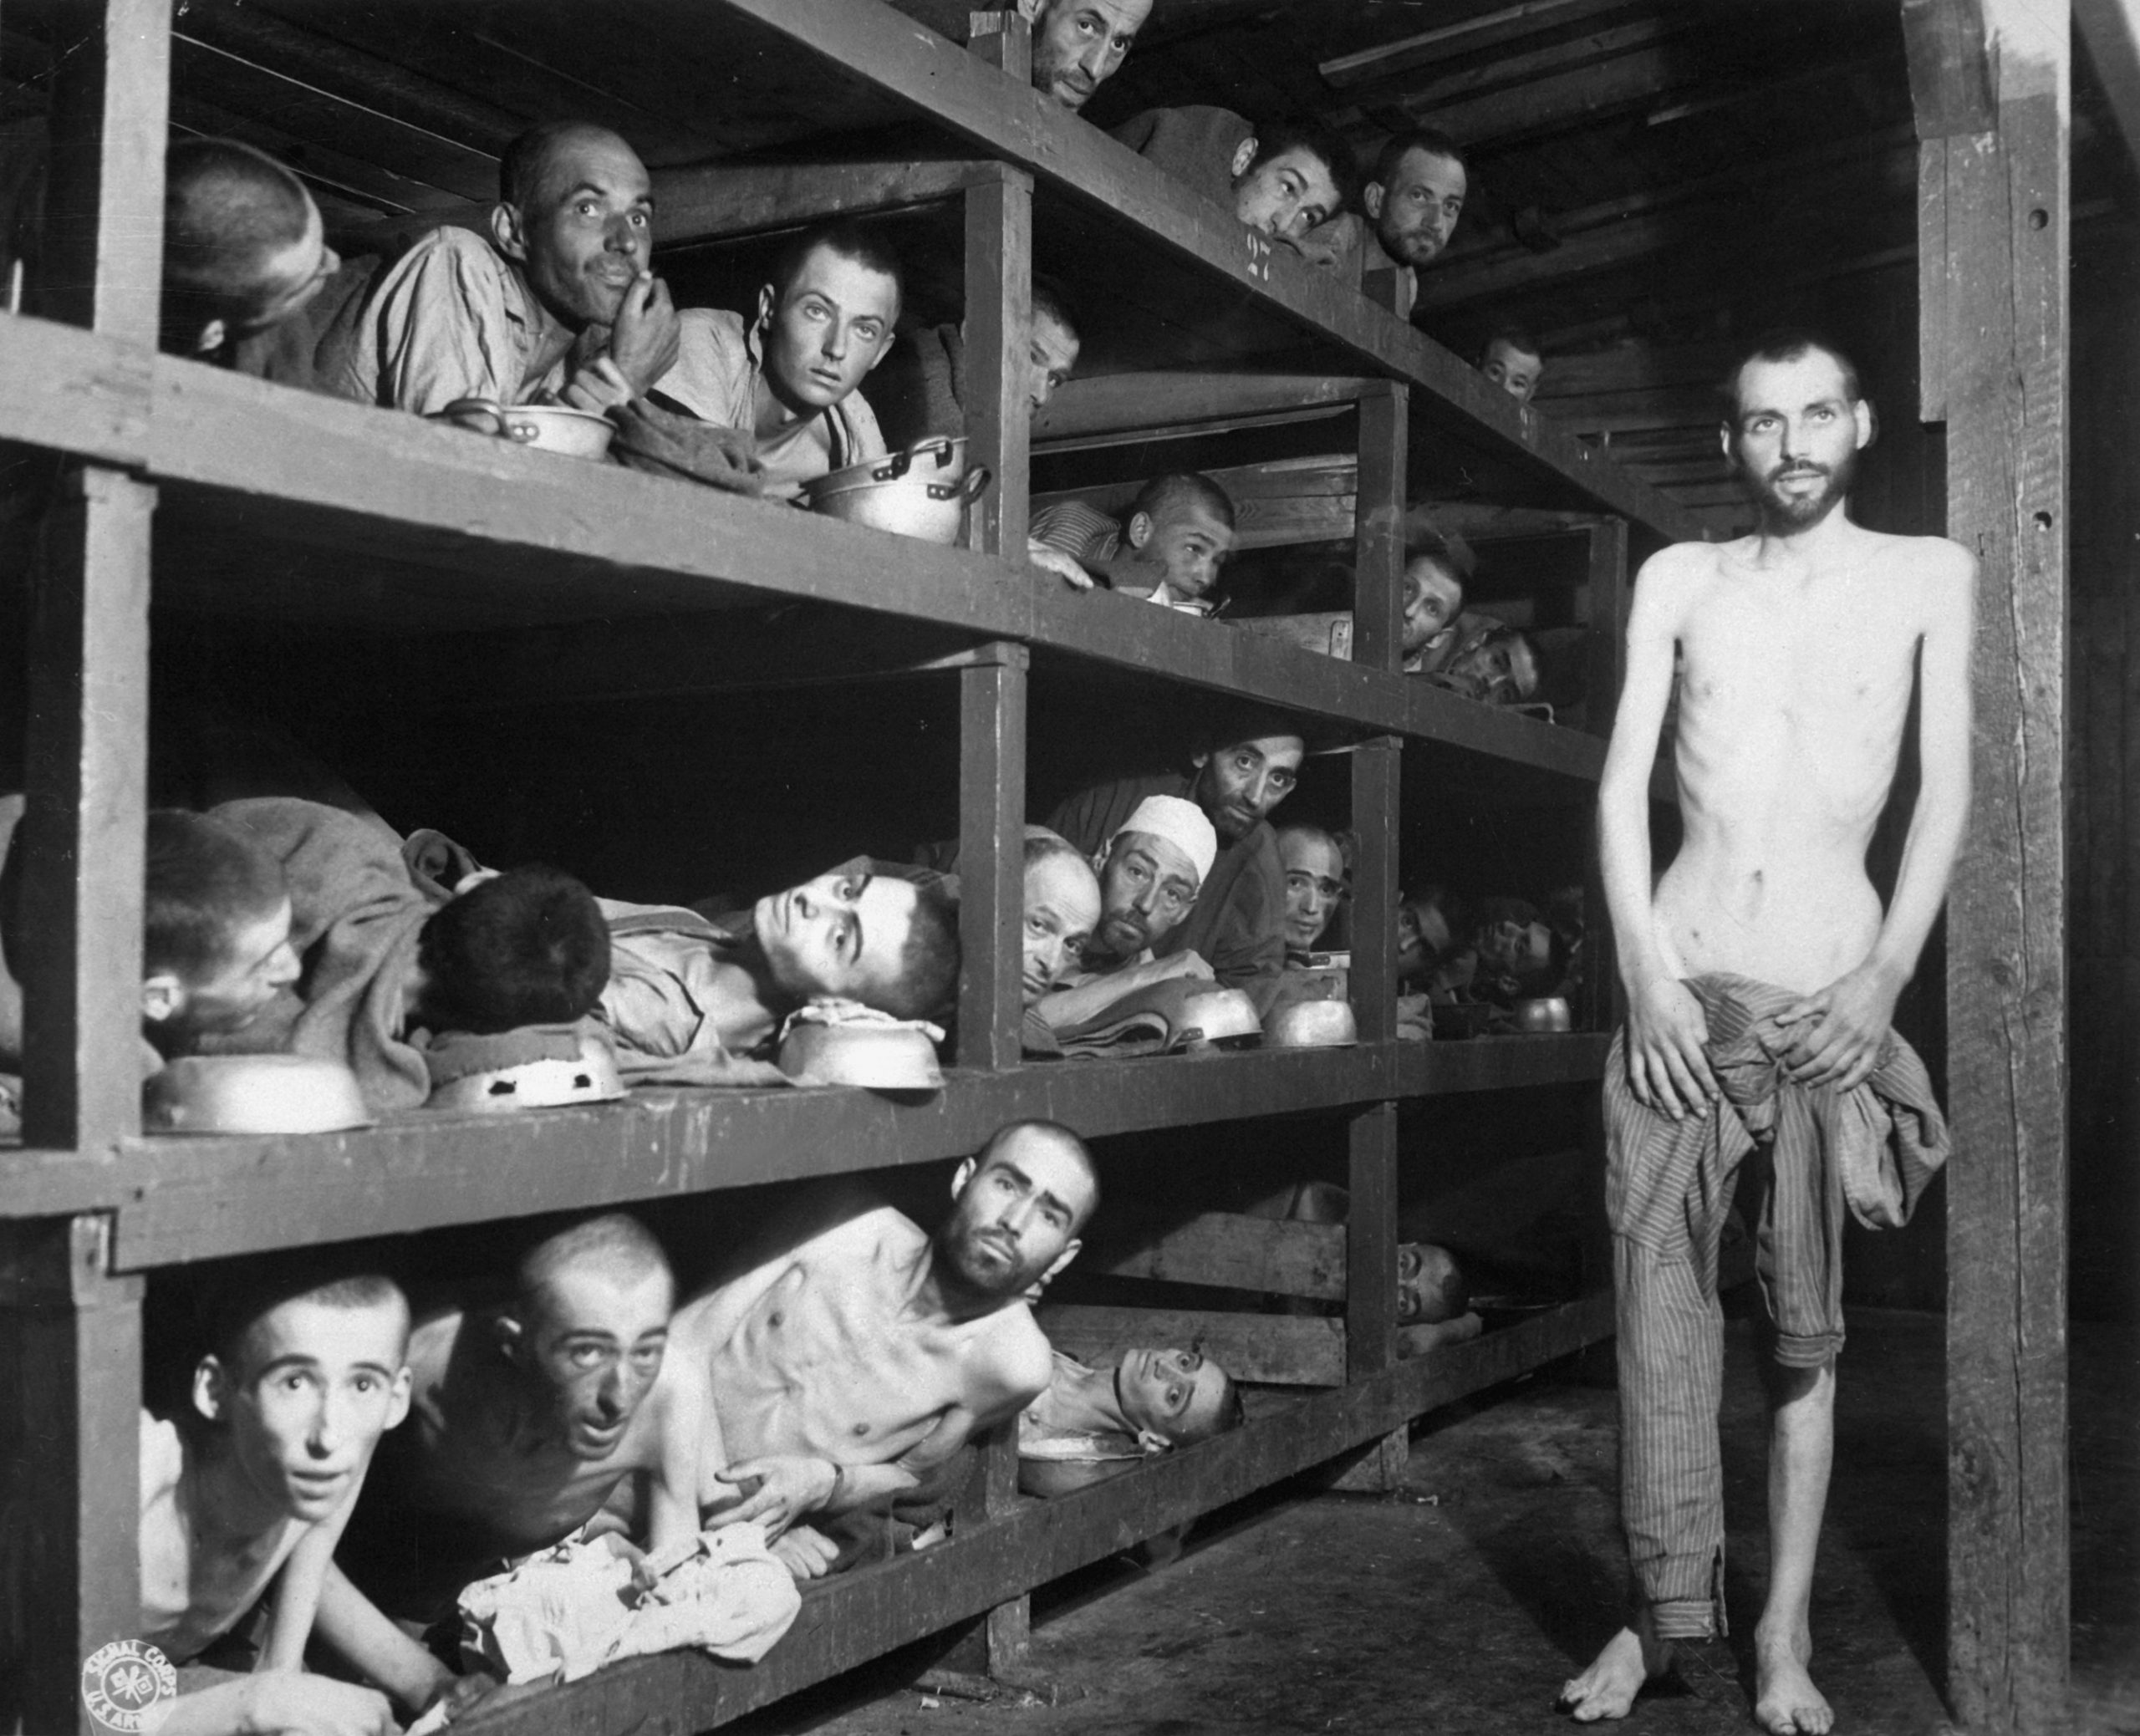 Prigionieri in una baracca del lager di Buchenwald nel momento della liberazione - 27 gennaio